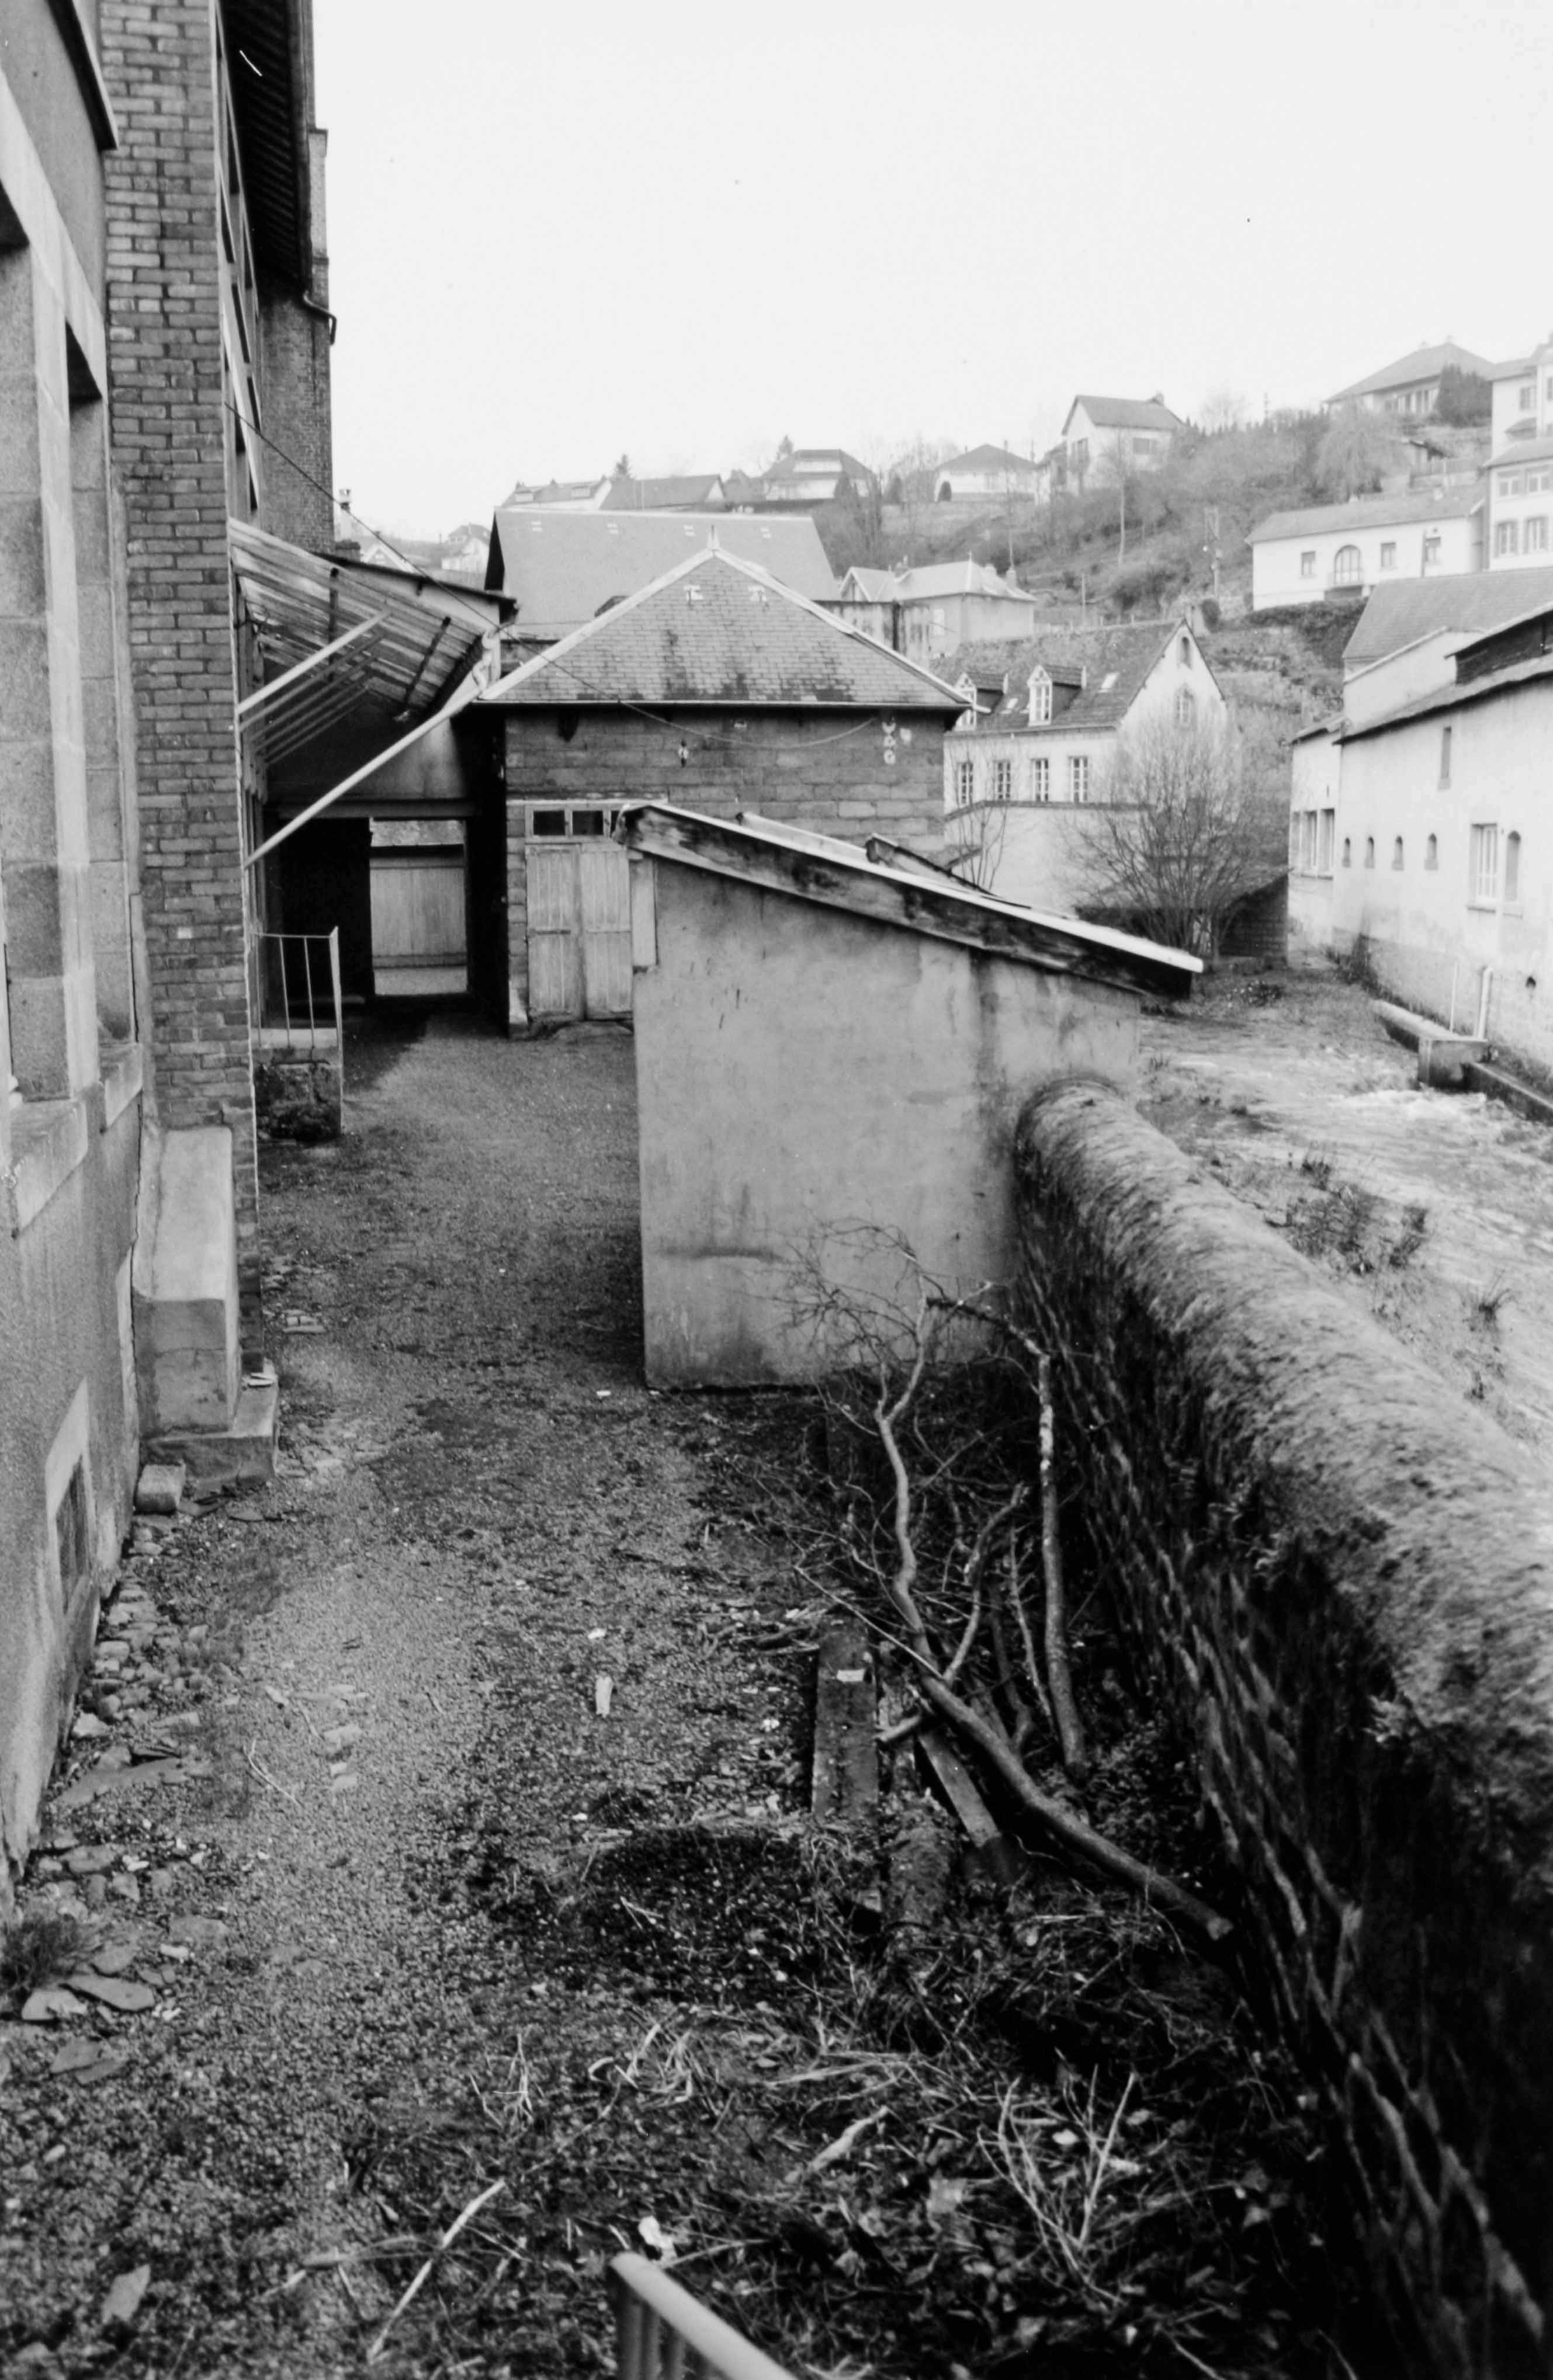 L'arrière du bâtiment des ateliers de tissage (élévation nord) le long de la Beauze (reportage photographique de L. Yeghicheyan, 1992, Aubusson, Musée départemental de la Tapisserie)